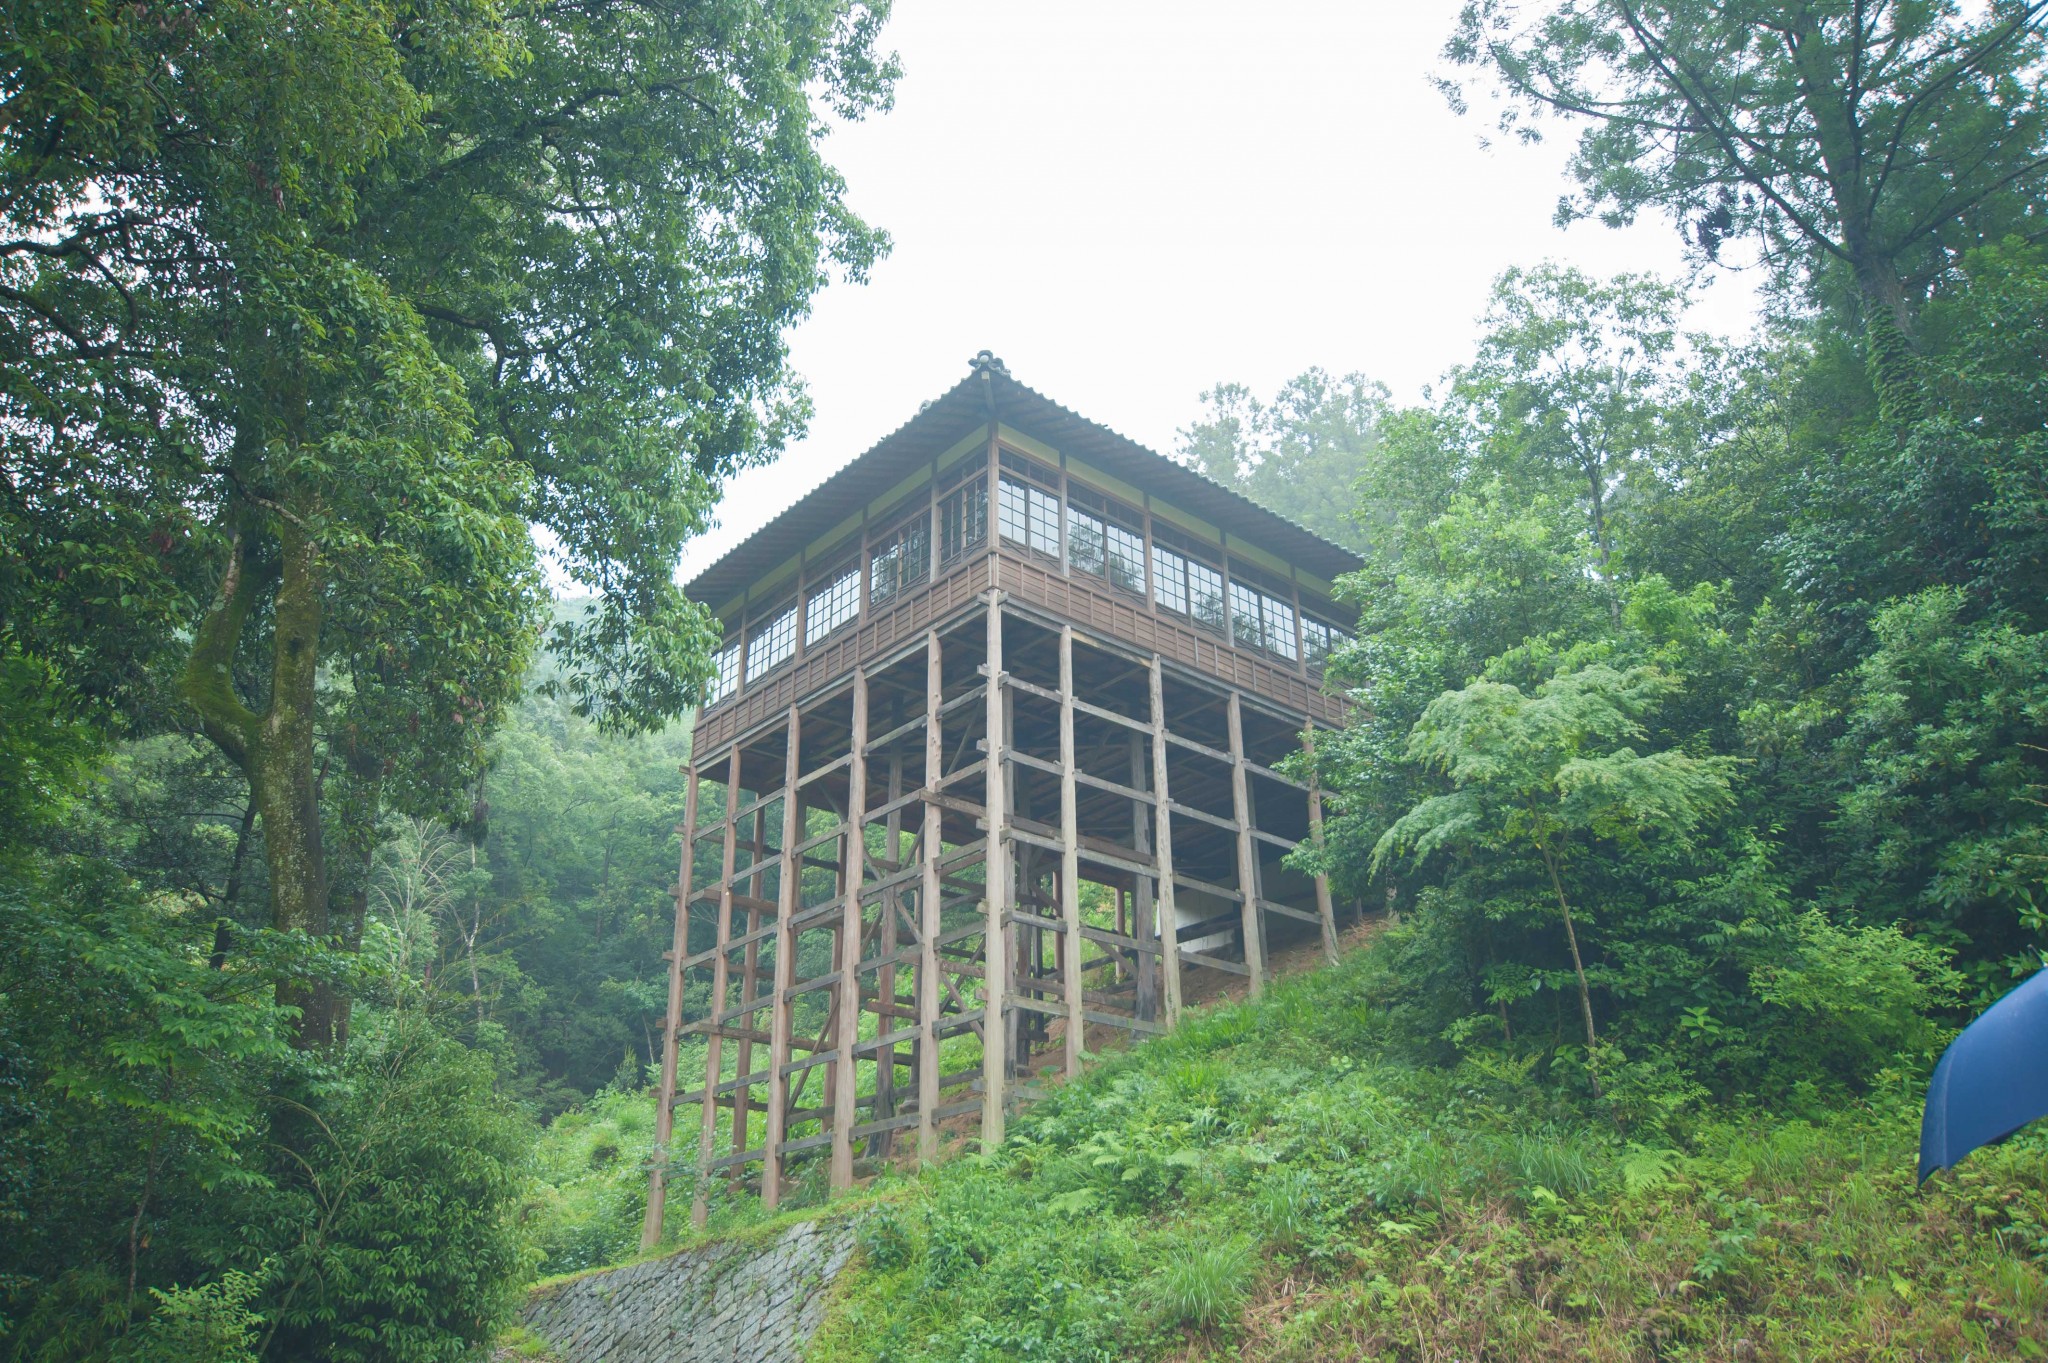 「懸造り」は、斜面に細い柱を立て、その上に建物をつくる建築様式。〈少彦名神社参籠殿〉は、床面積のおよそ9割が山崖にせり出しています。